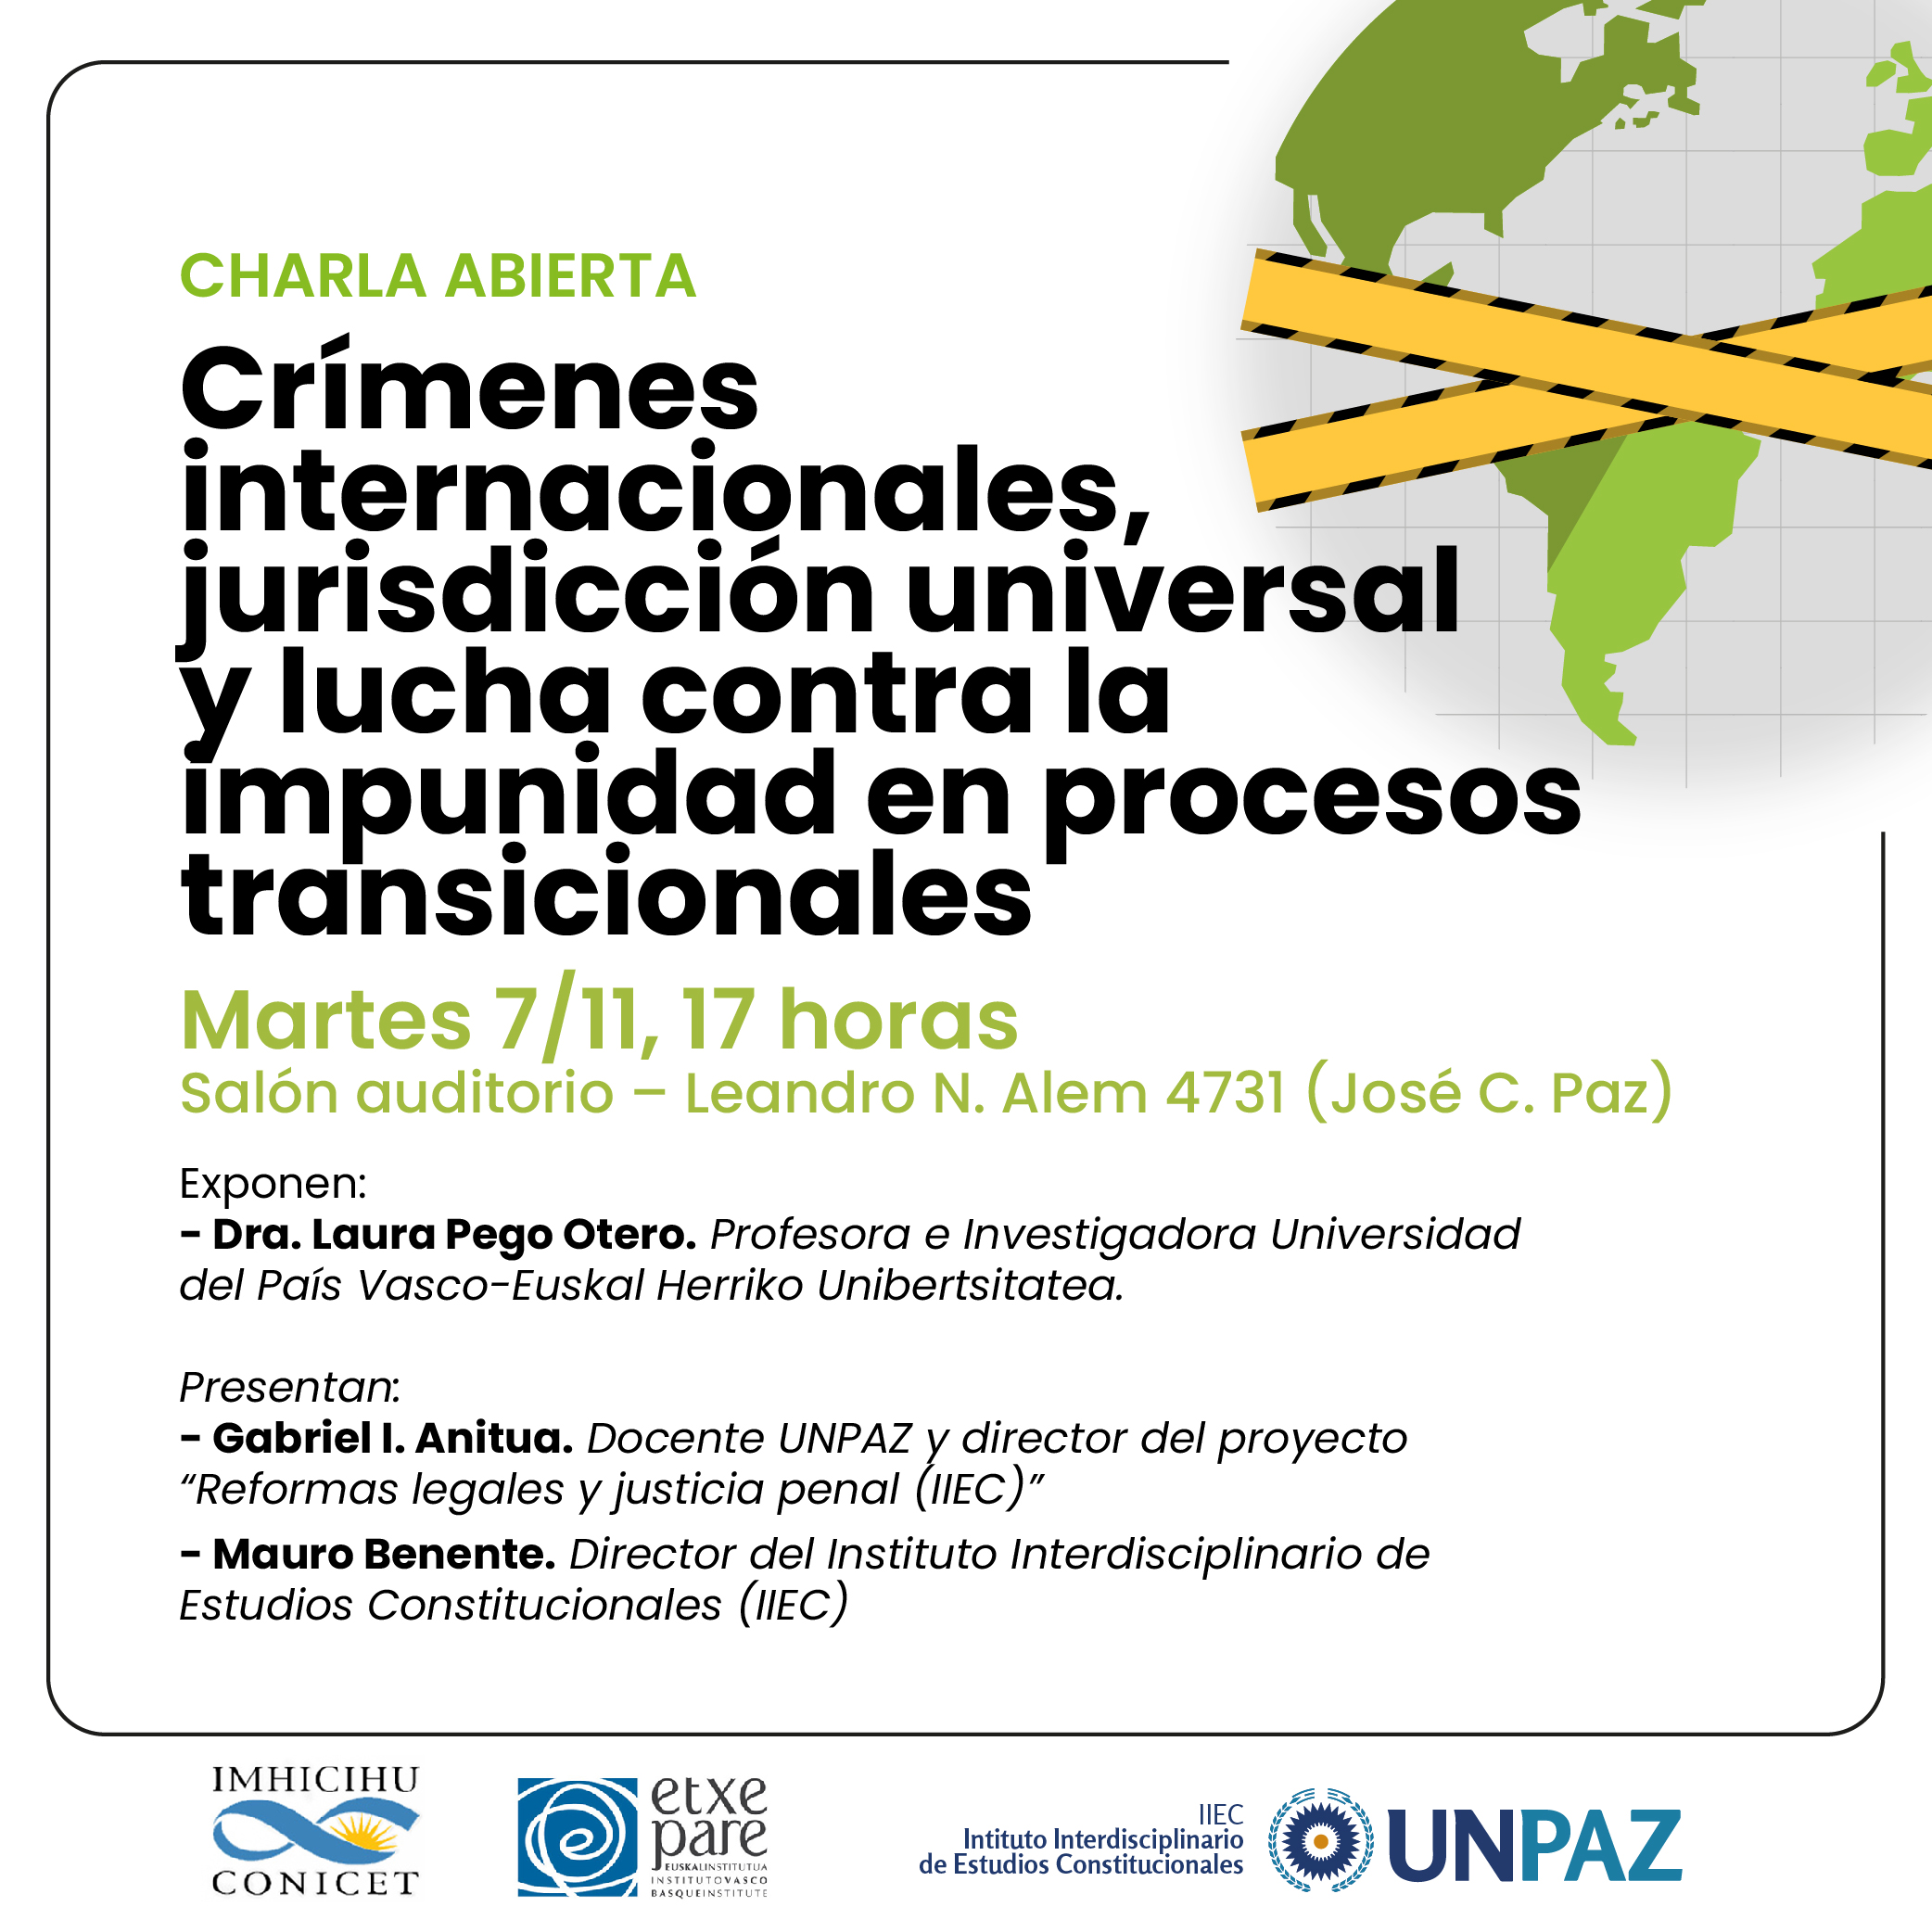 Charla “Crímenes internacionales, Jurisdicción Universal y lucha contra la impunidad en procesos transicionales”